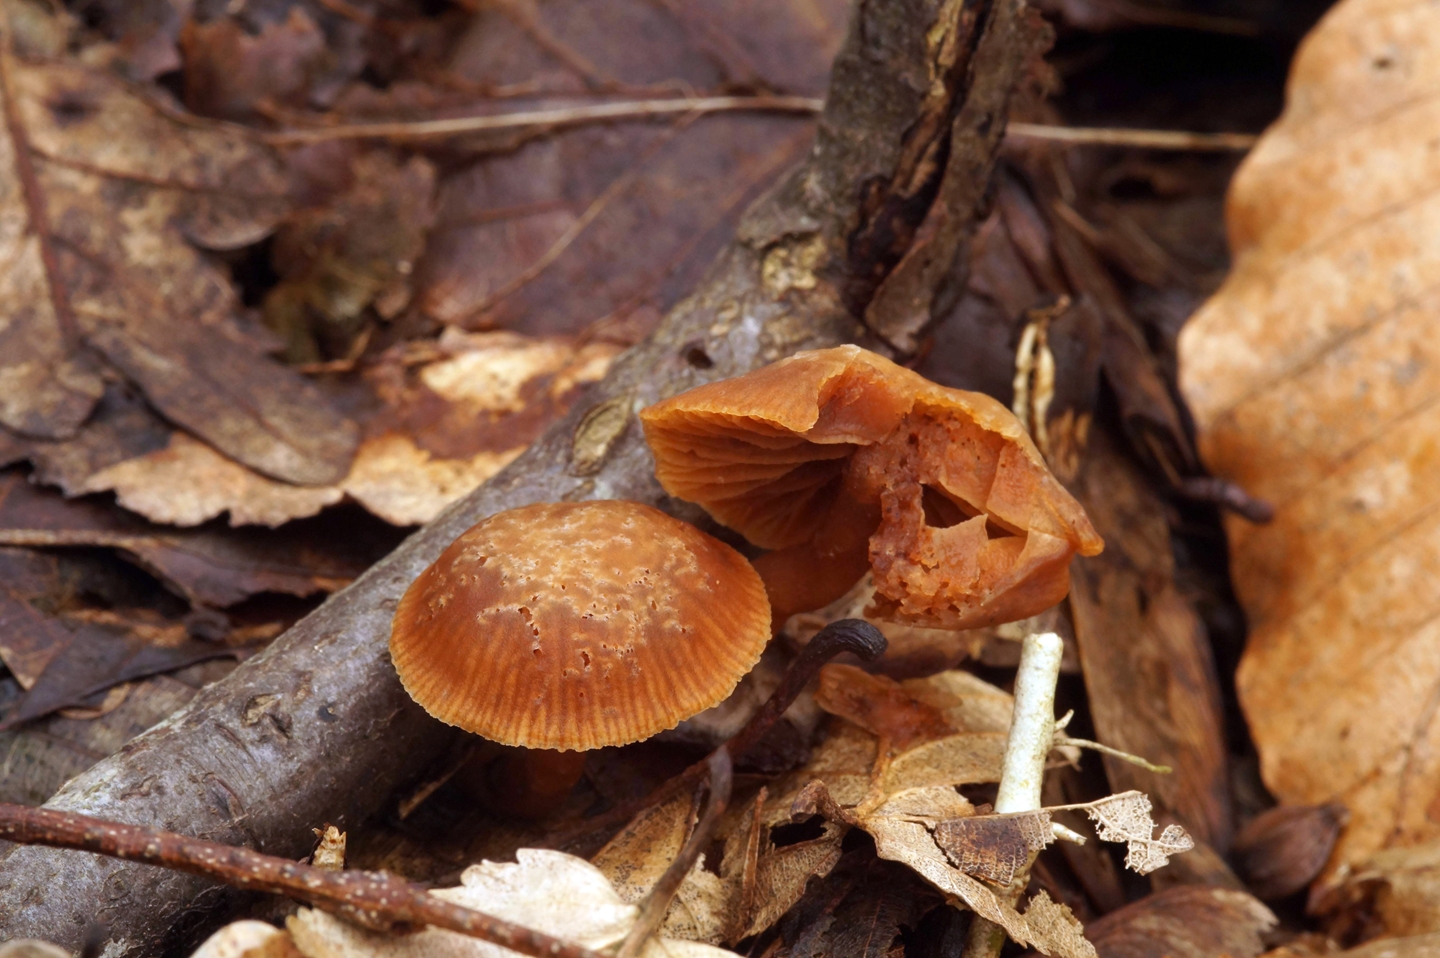 осенние грибы на кубани фото названия